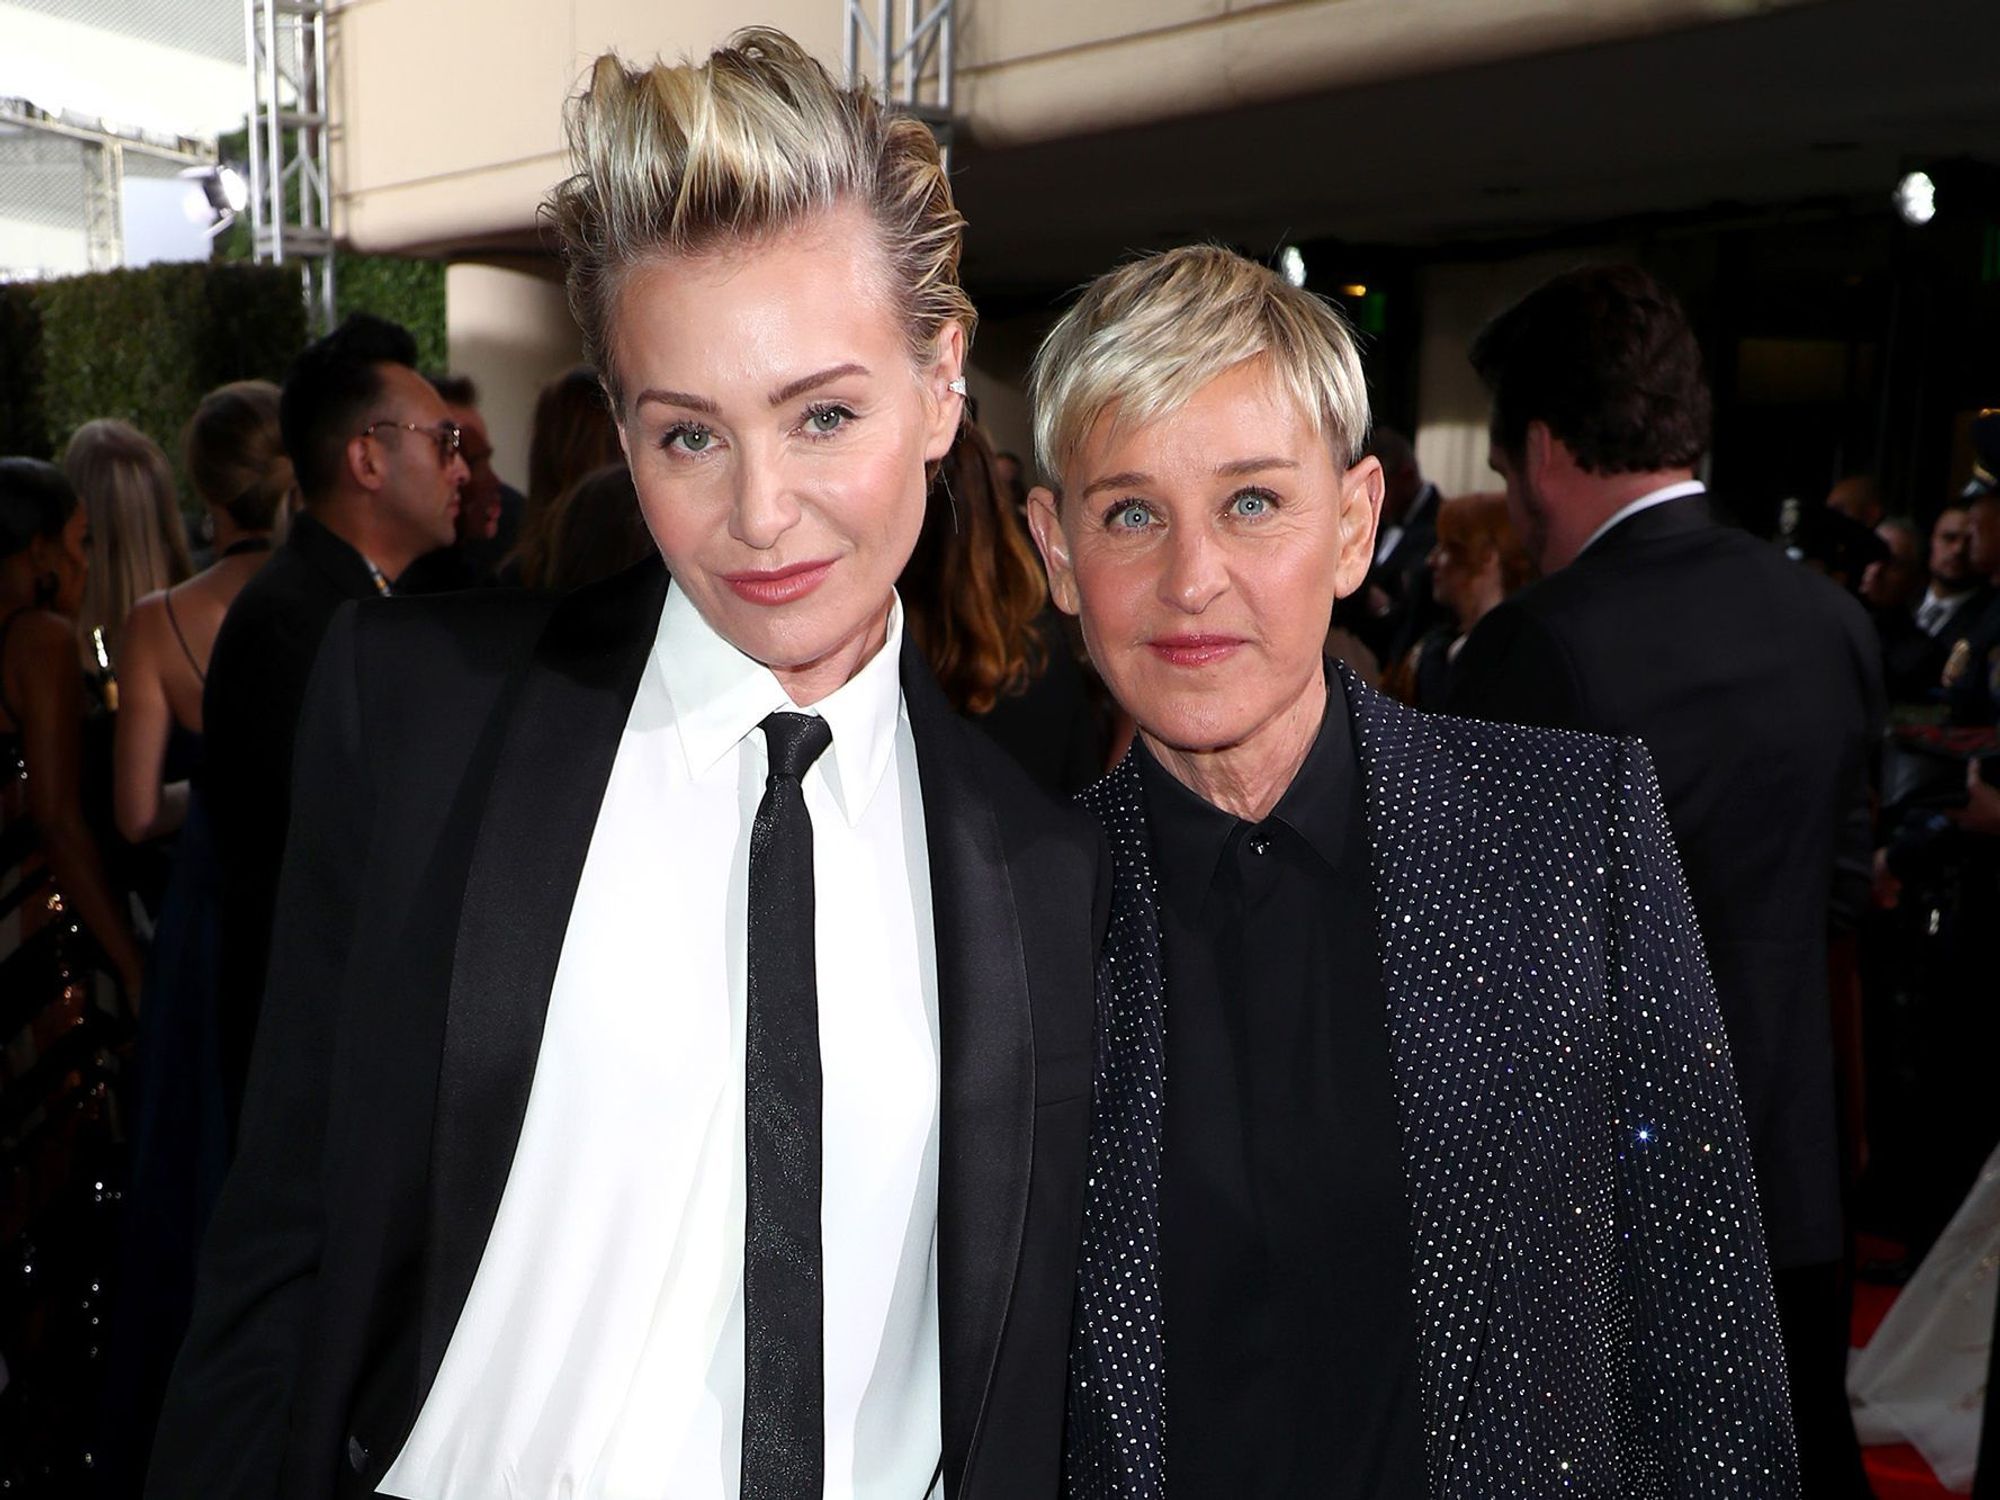 Ellen DeGeneres and Portia de Rossi: 15-Year Age Gap